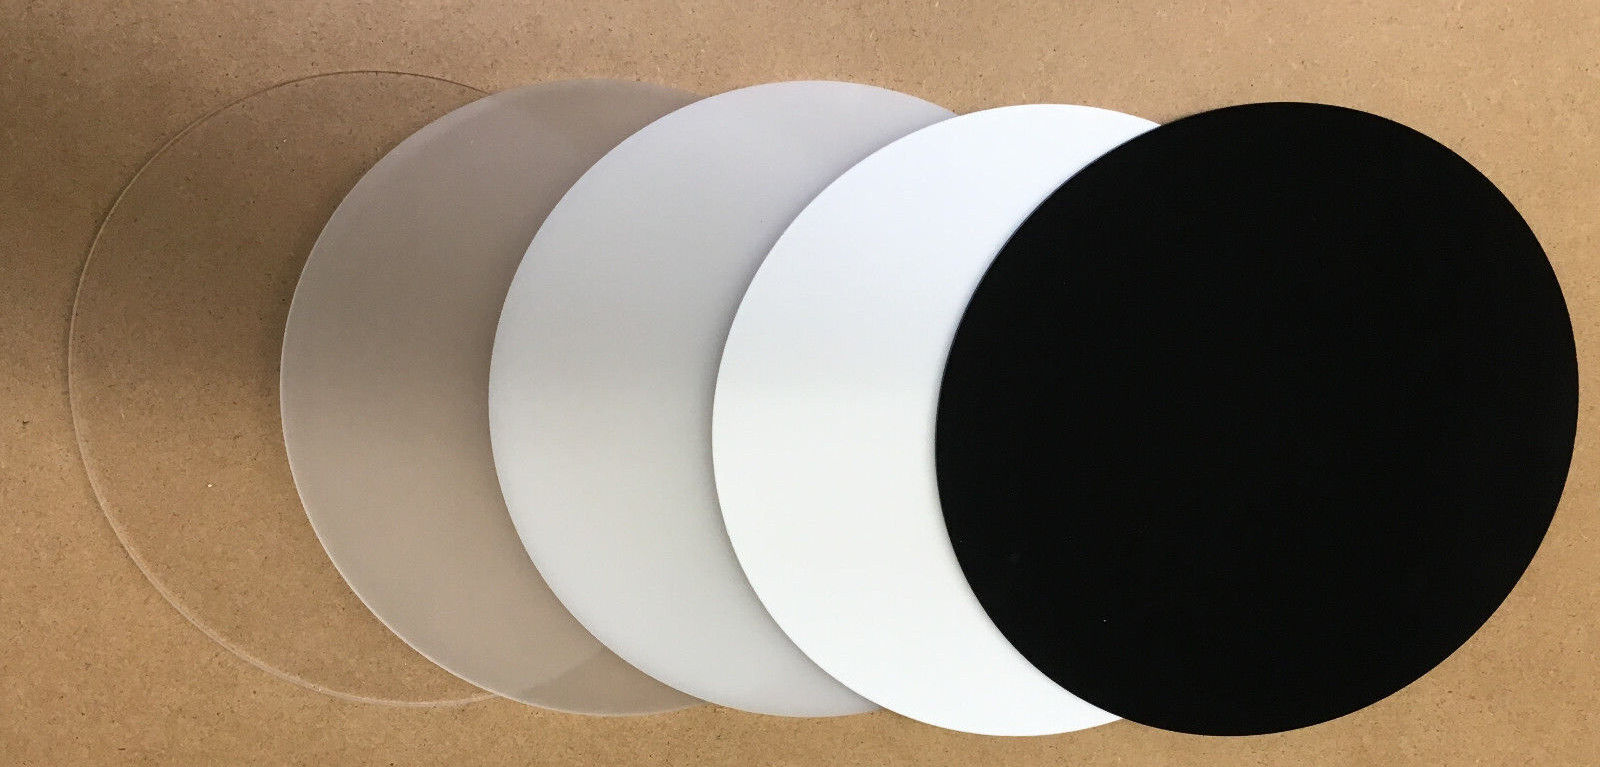 PLEXIGLAS Acrylglas Runde Scheibe klar milchglas weiß schwarz Ø50mm - Ø700mm